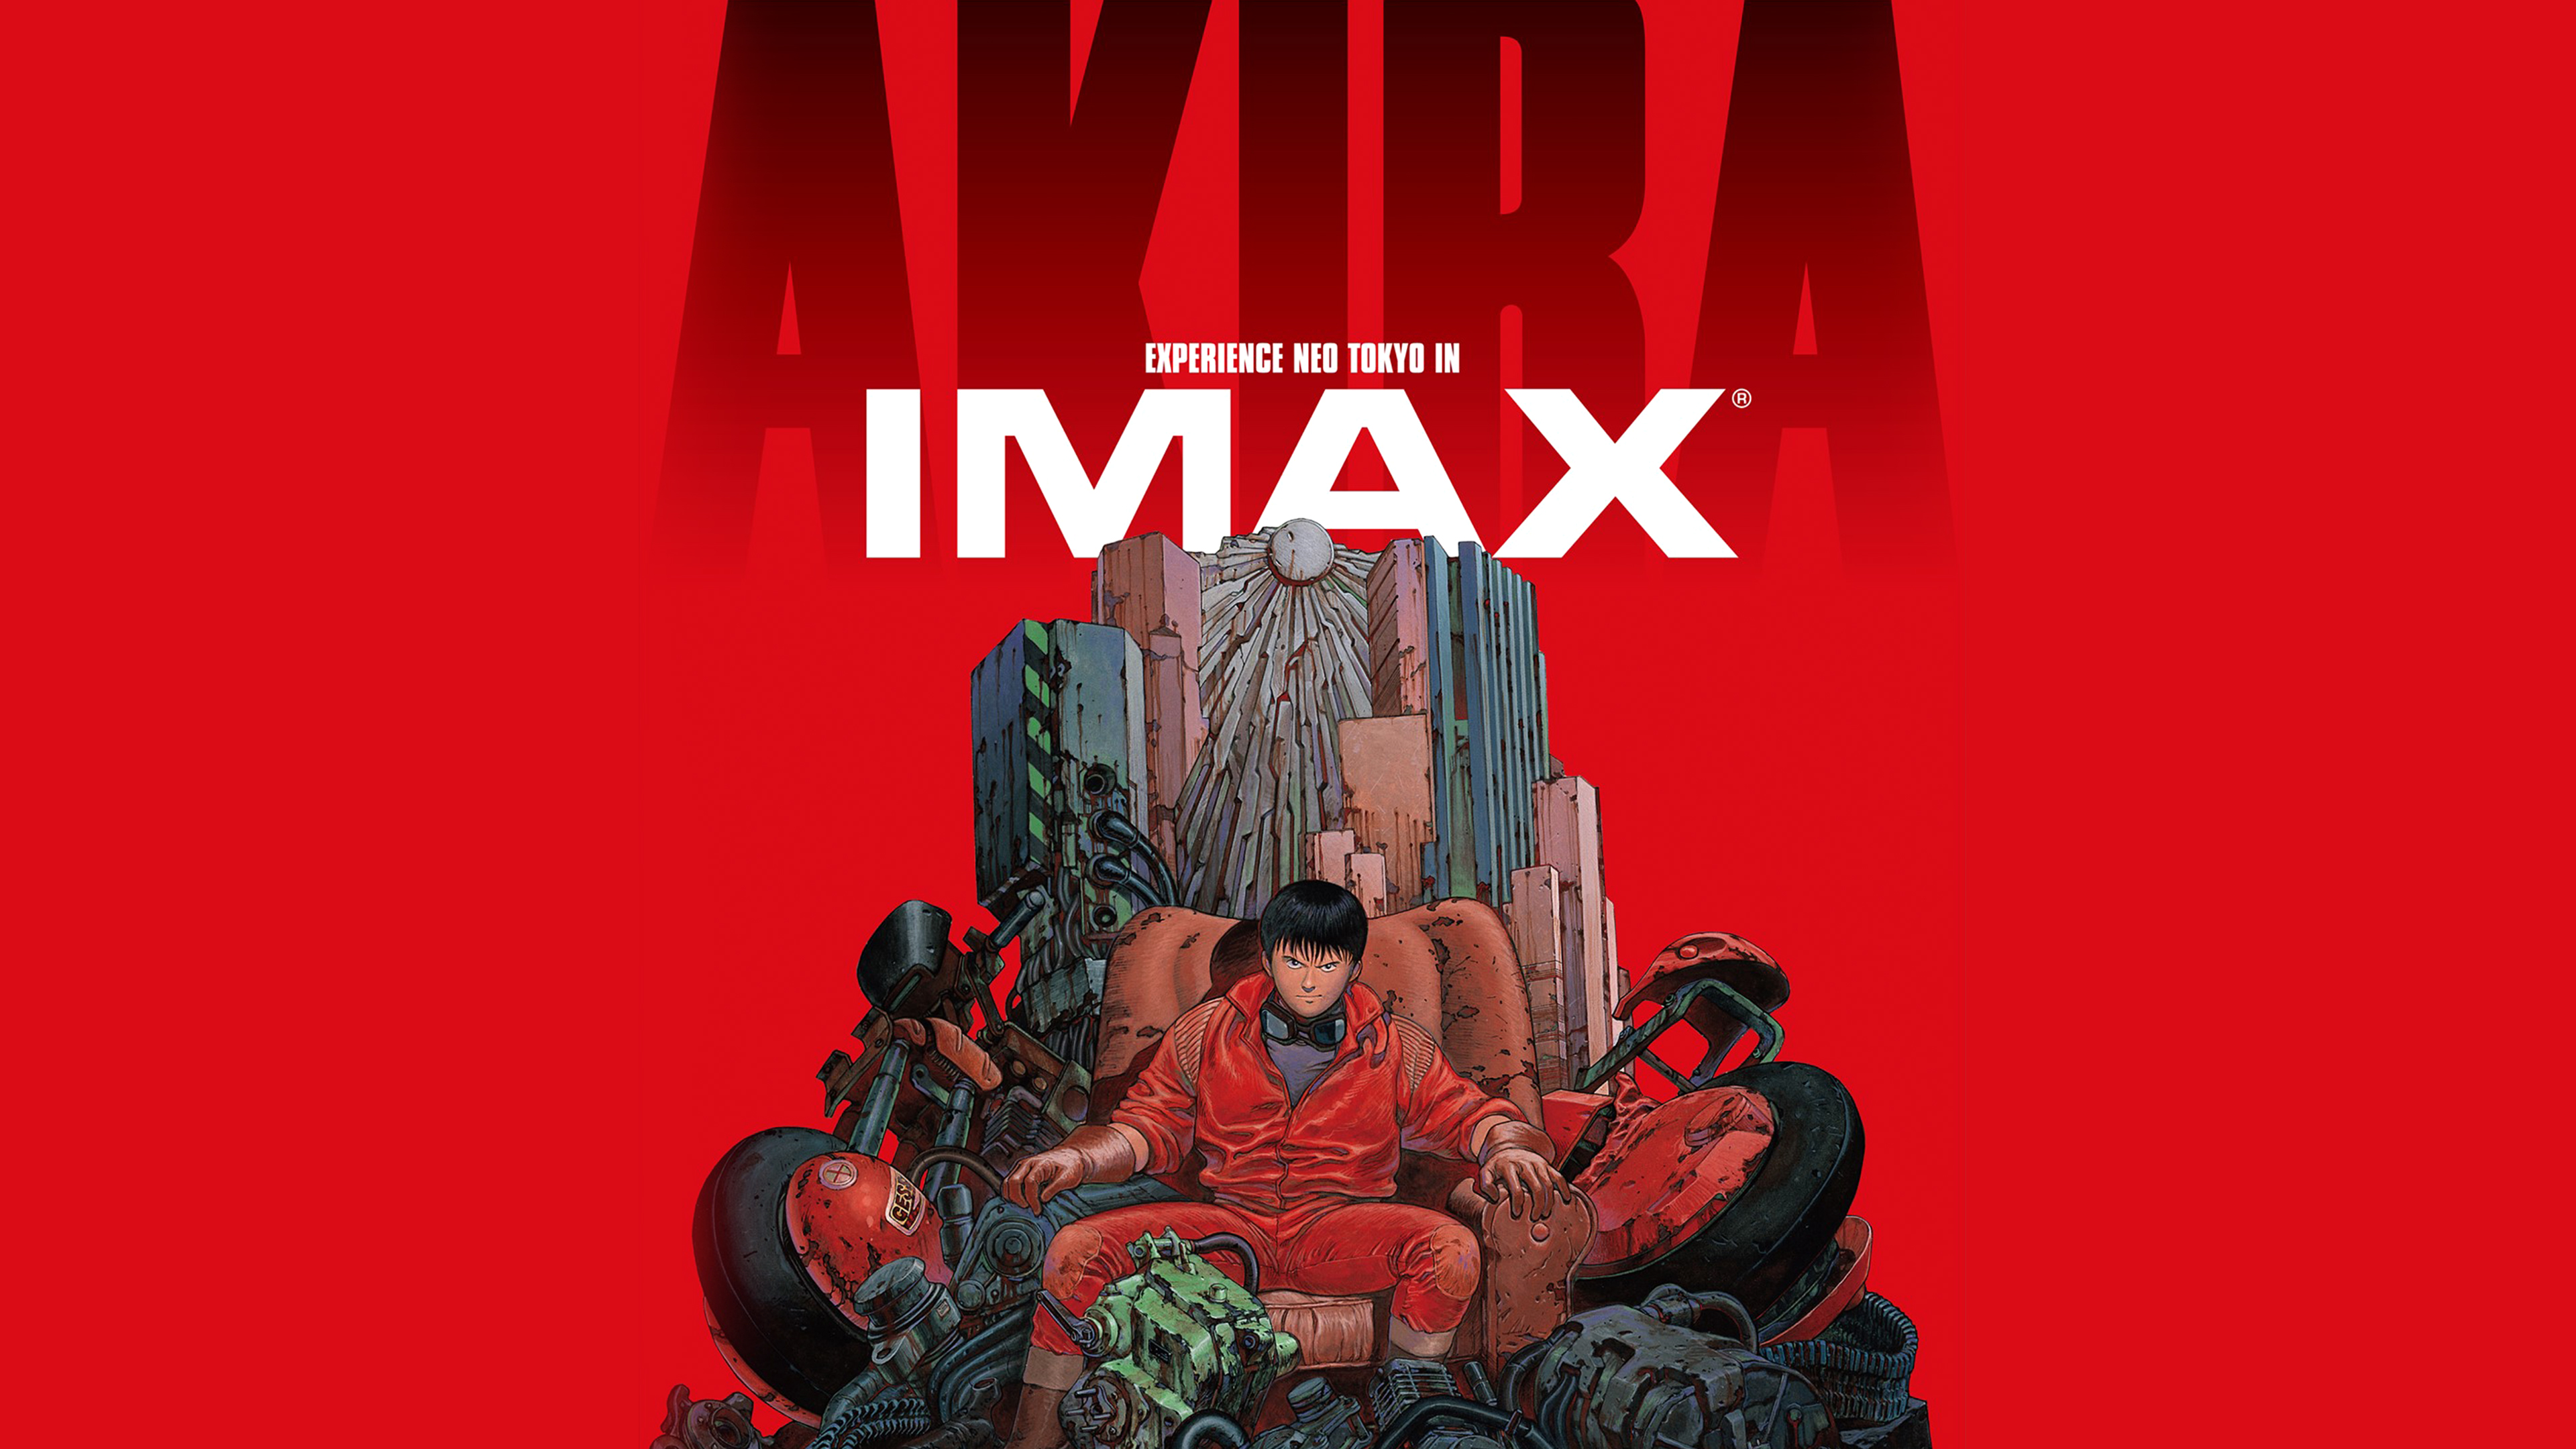 Akira 4K Poster Wallpapers